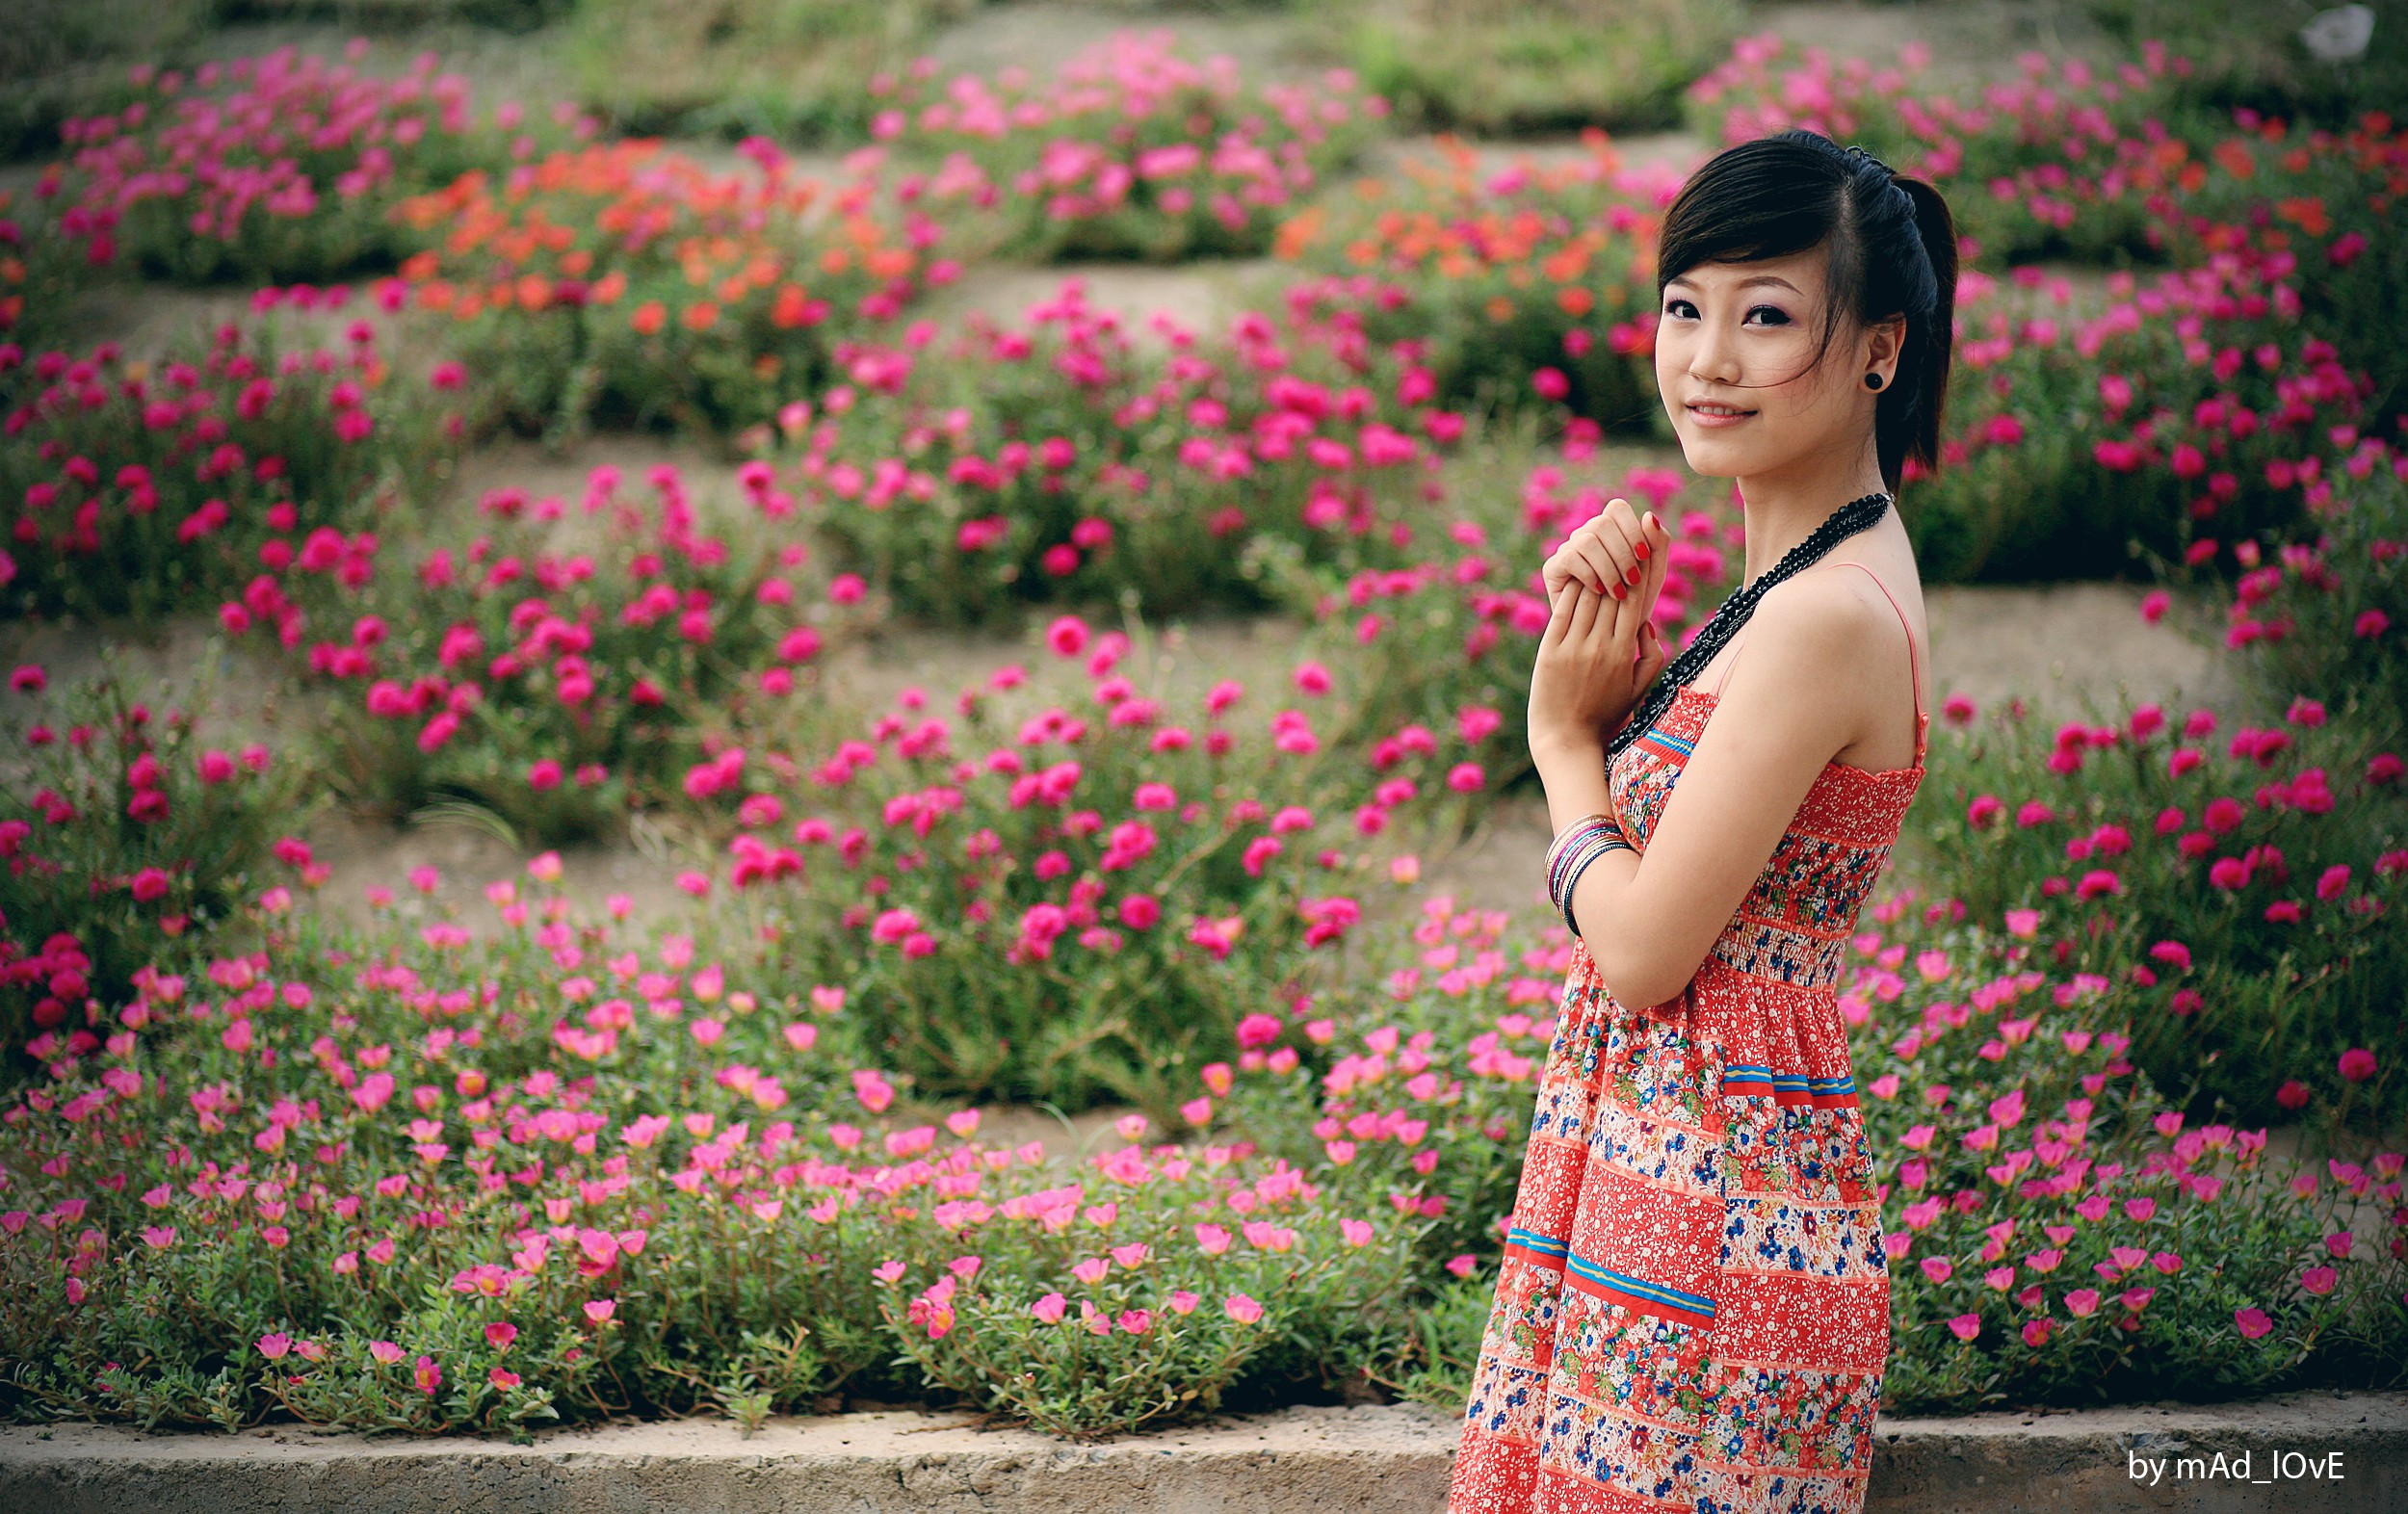 Vietnamese girl. Вьетнамки девушки. Вьетнамские женщины. Самые красивые девушки Вьетнама. Вьетнамка девушка.